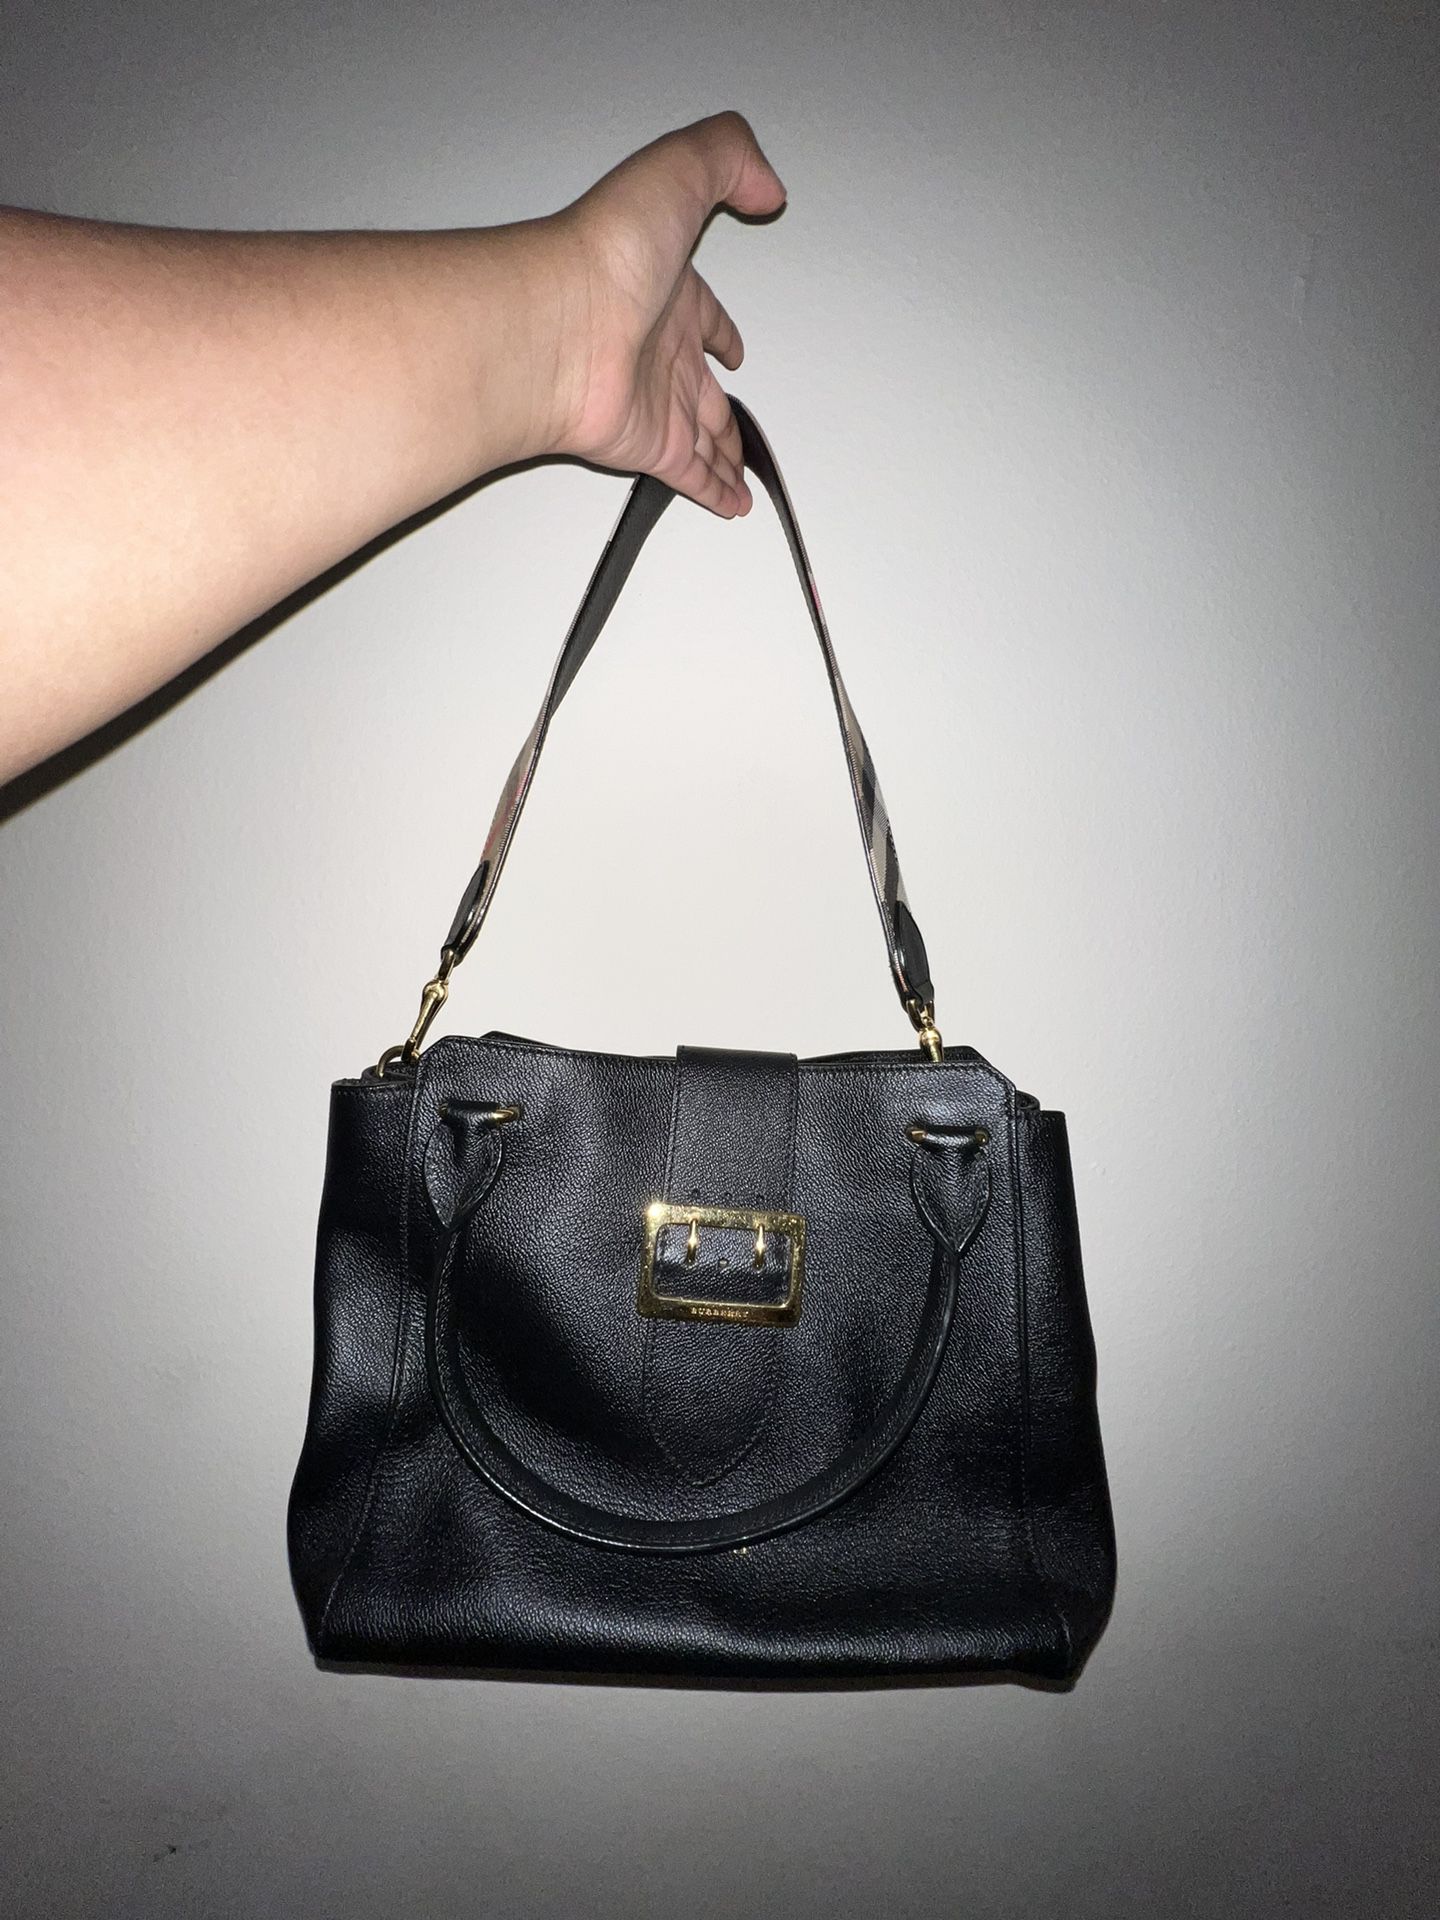 Burberry black handbag